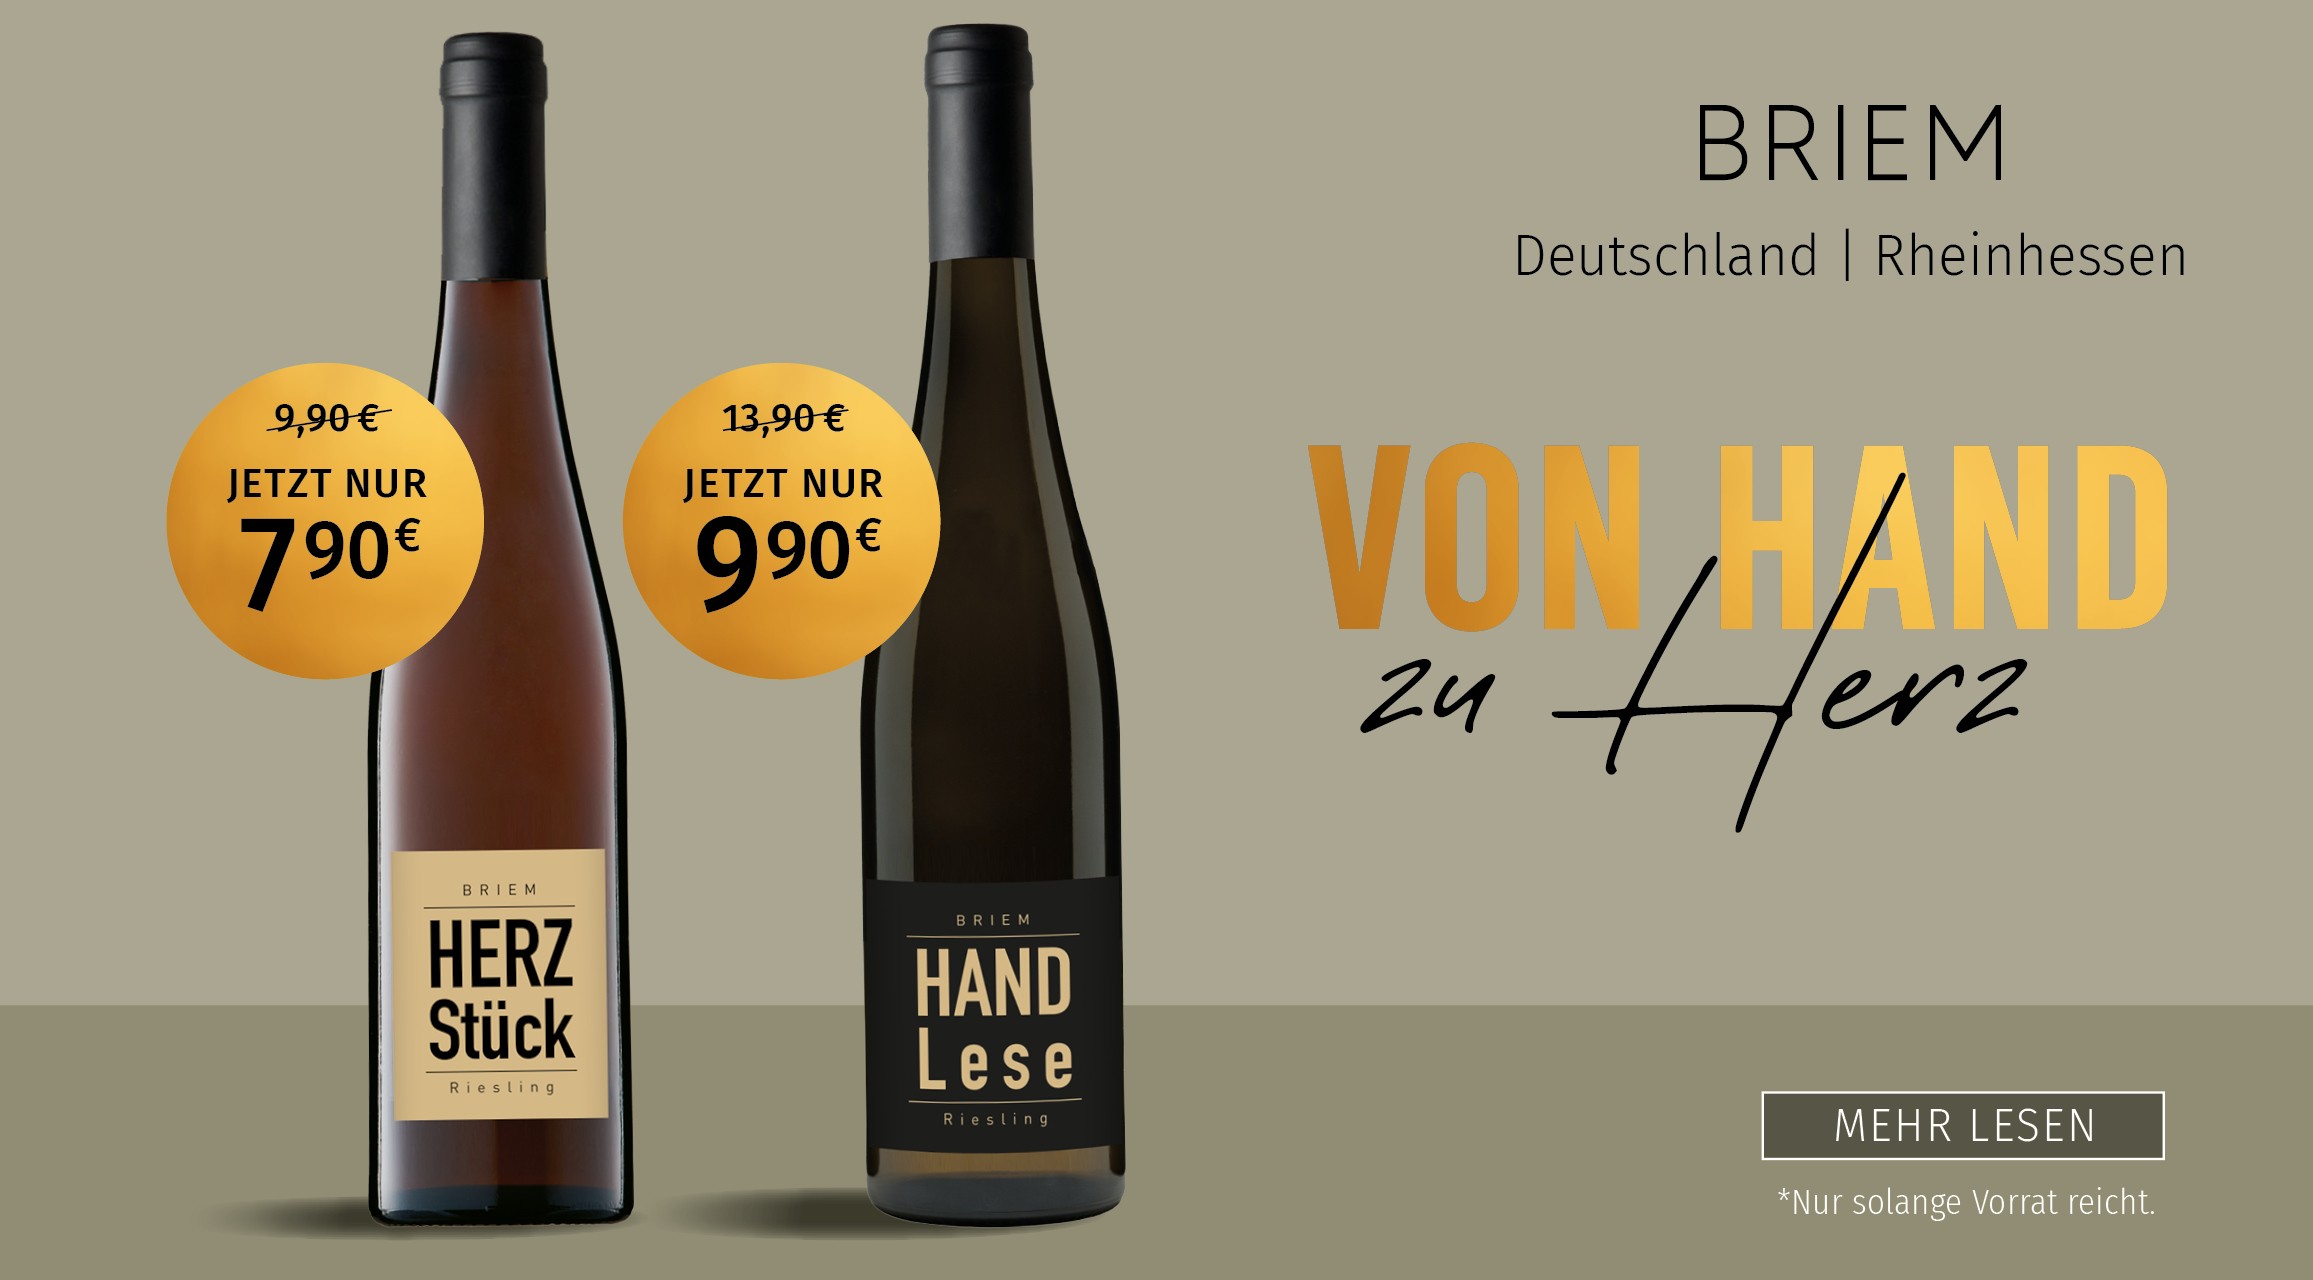 Herzstück, Handlese, Wein Cabinet Briem, Bad Godesberg,